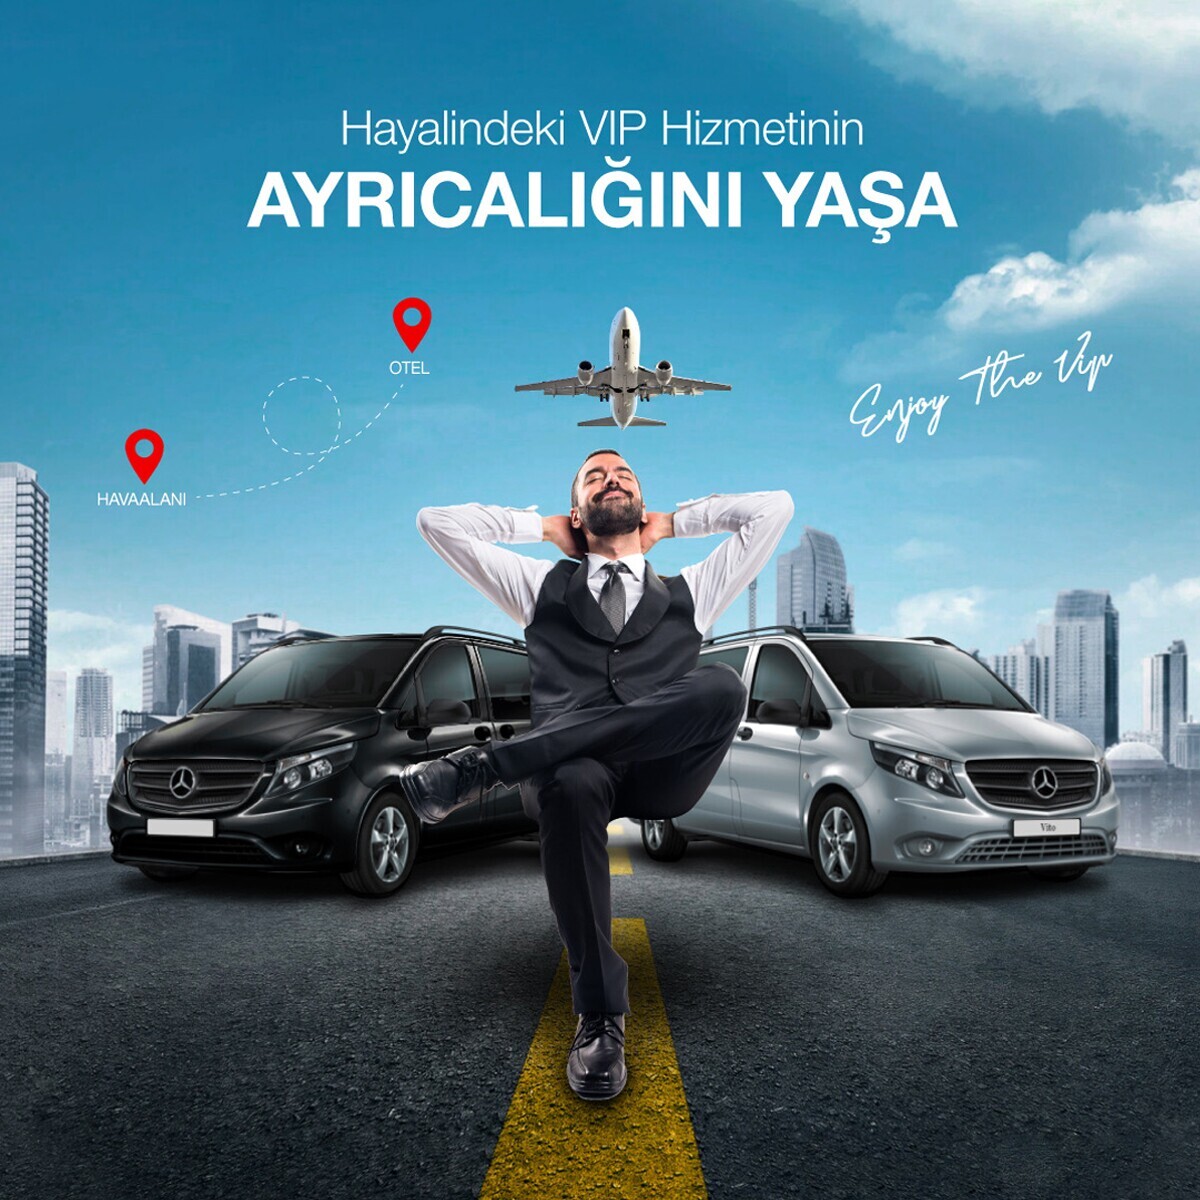 İstanbul Havalimanı ve Sabiha Gökçen Havalimanı VIP Transfer Hizmeti